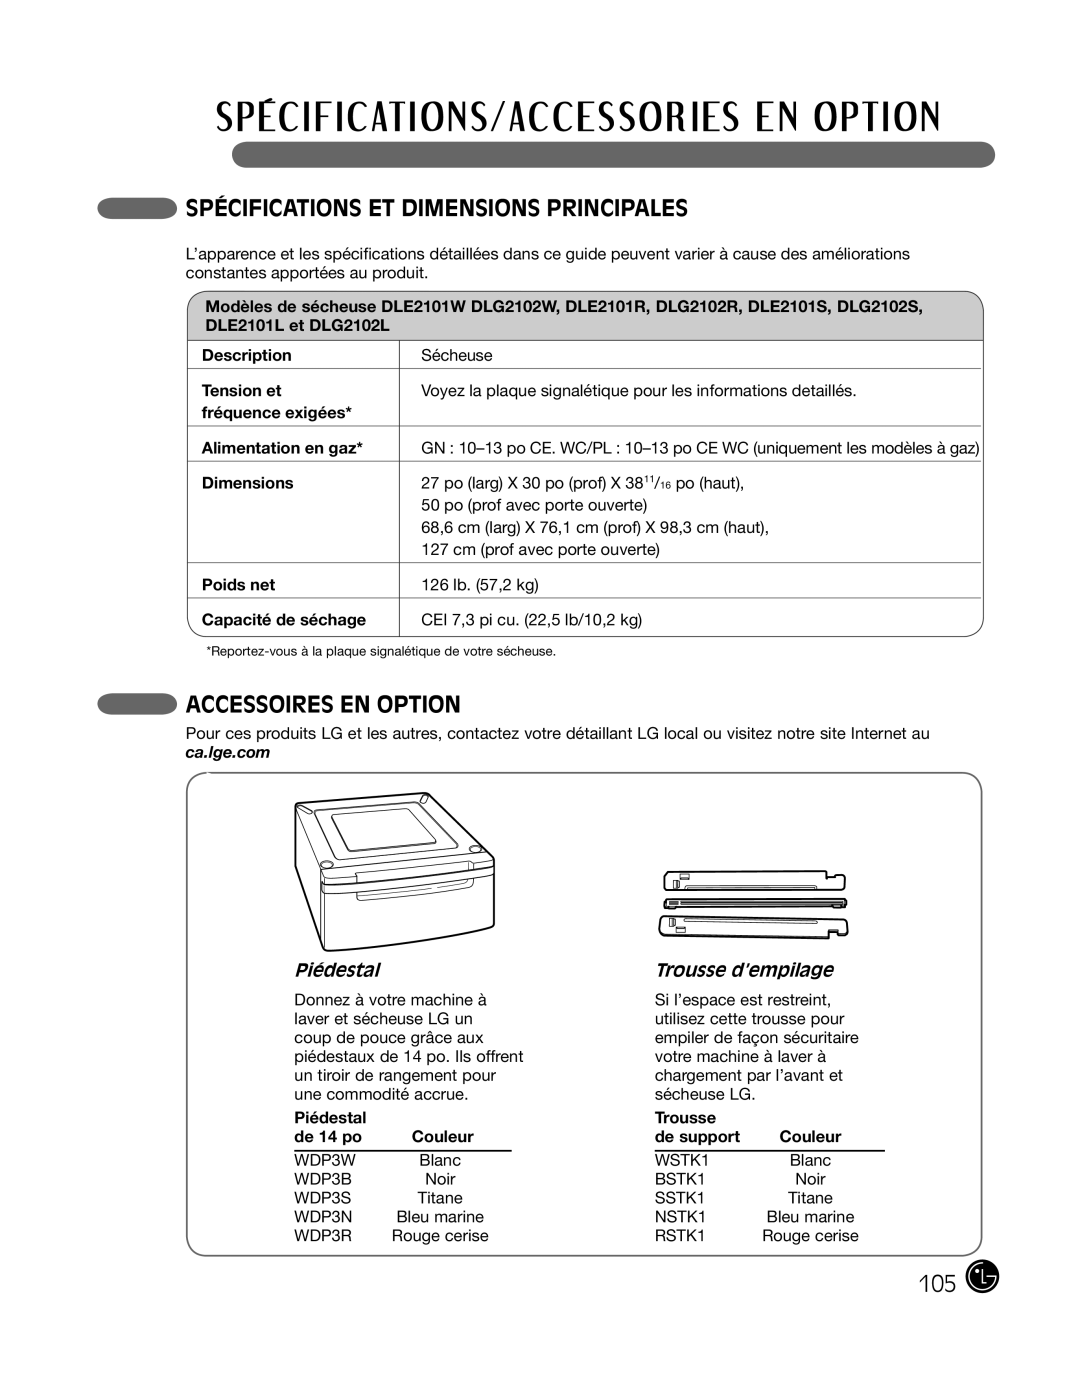 LG Electronics DLE2101S Spécifications Et Dimensions Principales, Accessoires En Option, Piédestal, Trousse d’empilage 